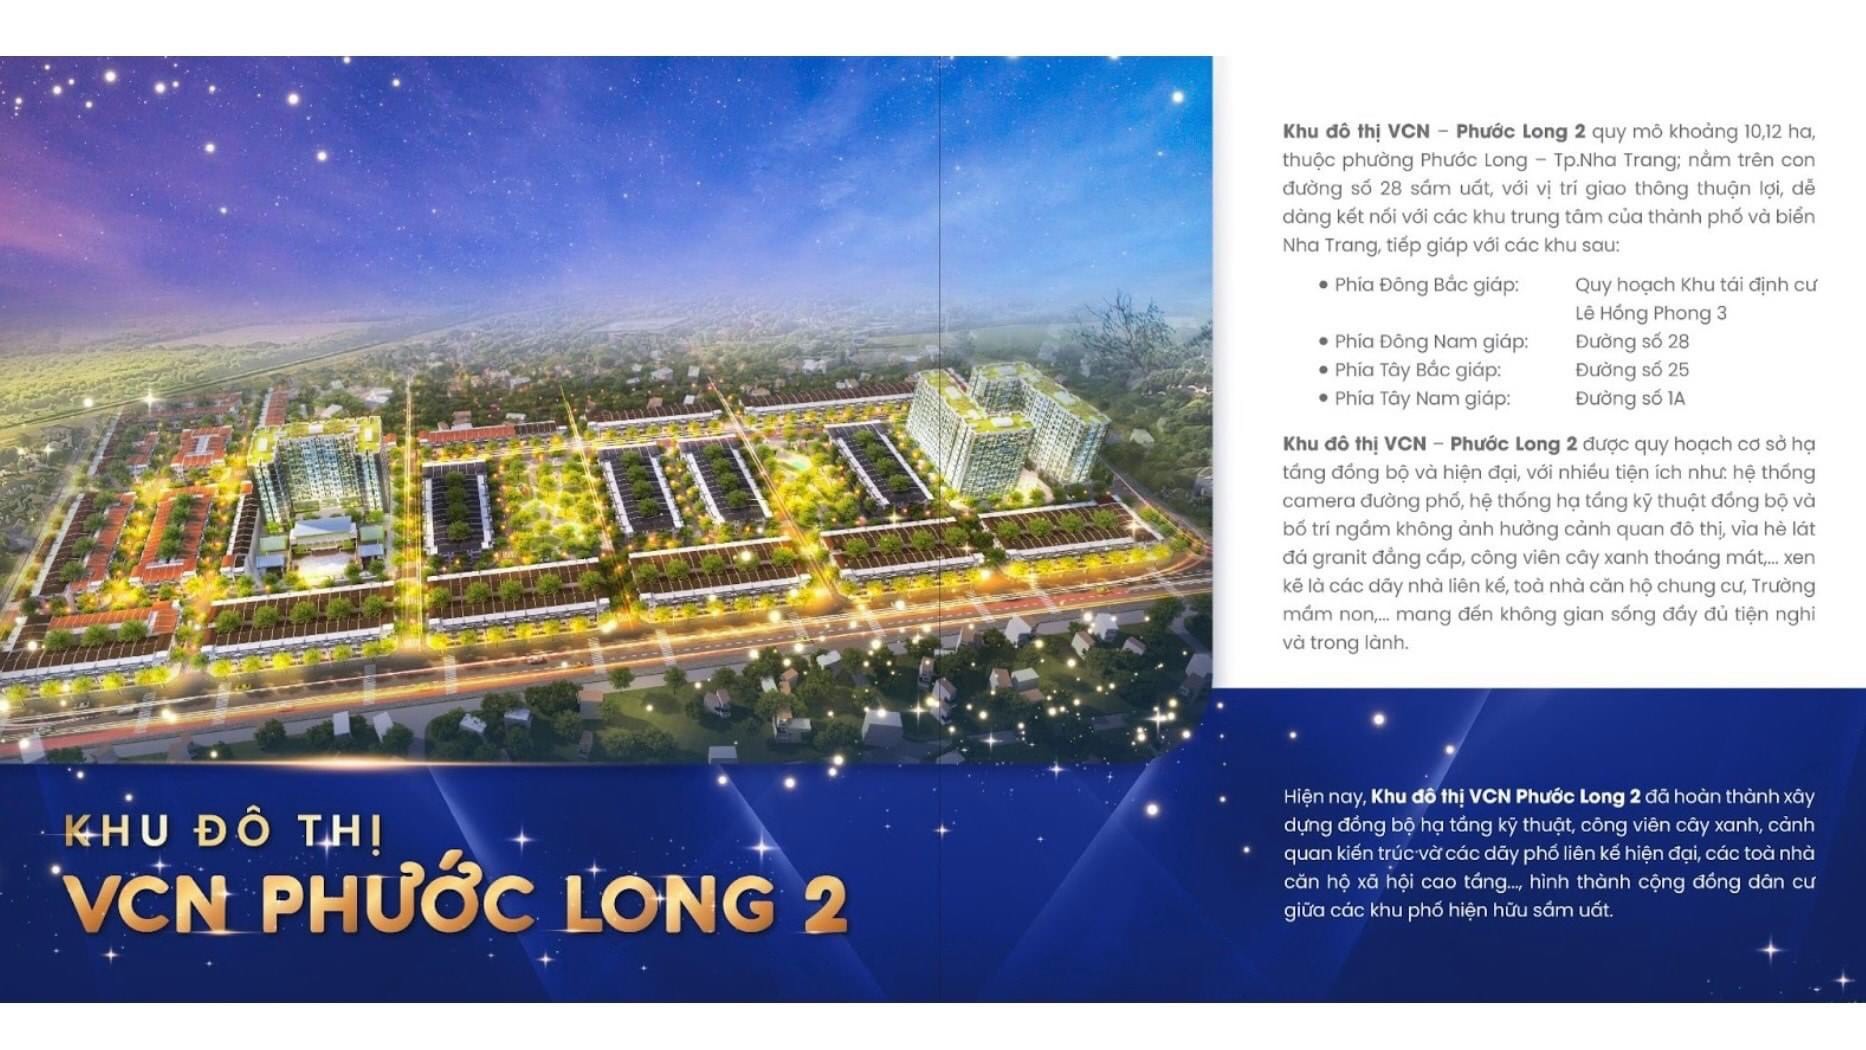 SHOPHOUSE VCN Phước Long 2 TP NHA TRANG